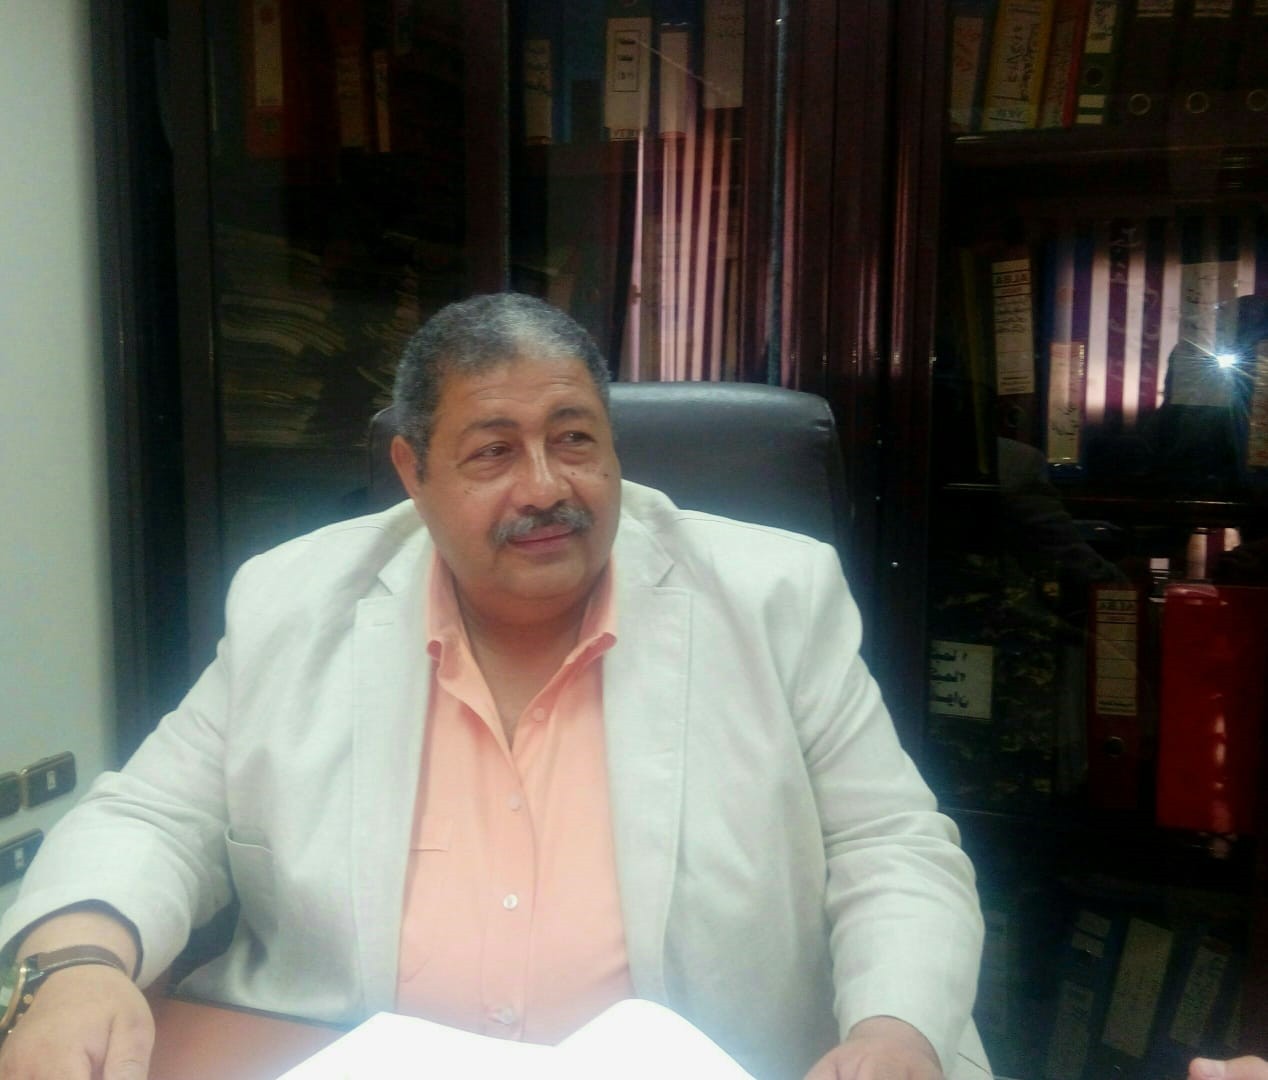  المهندس عادل حسن رئيس مجلس إدارة شركه الصرف الصحى للقاهره الكبرى (1)